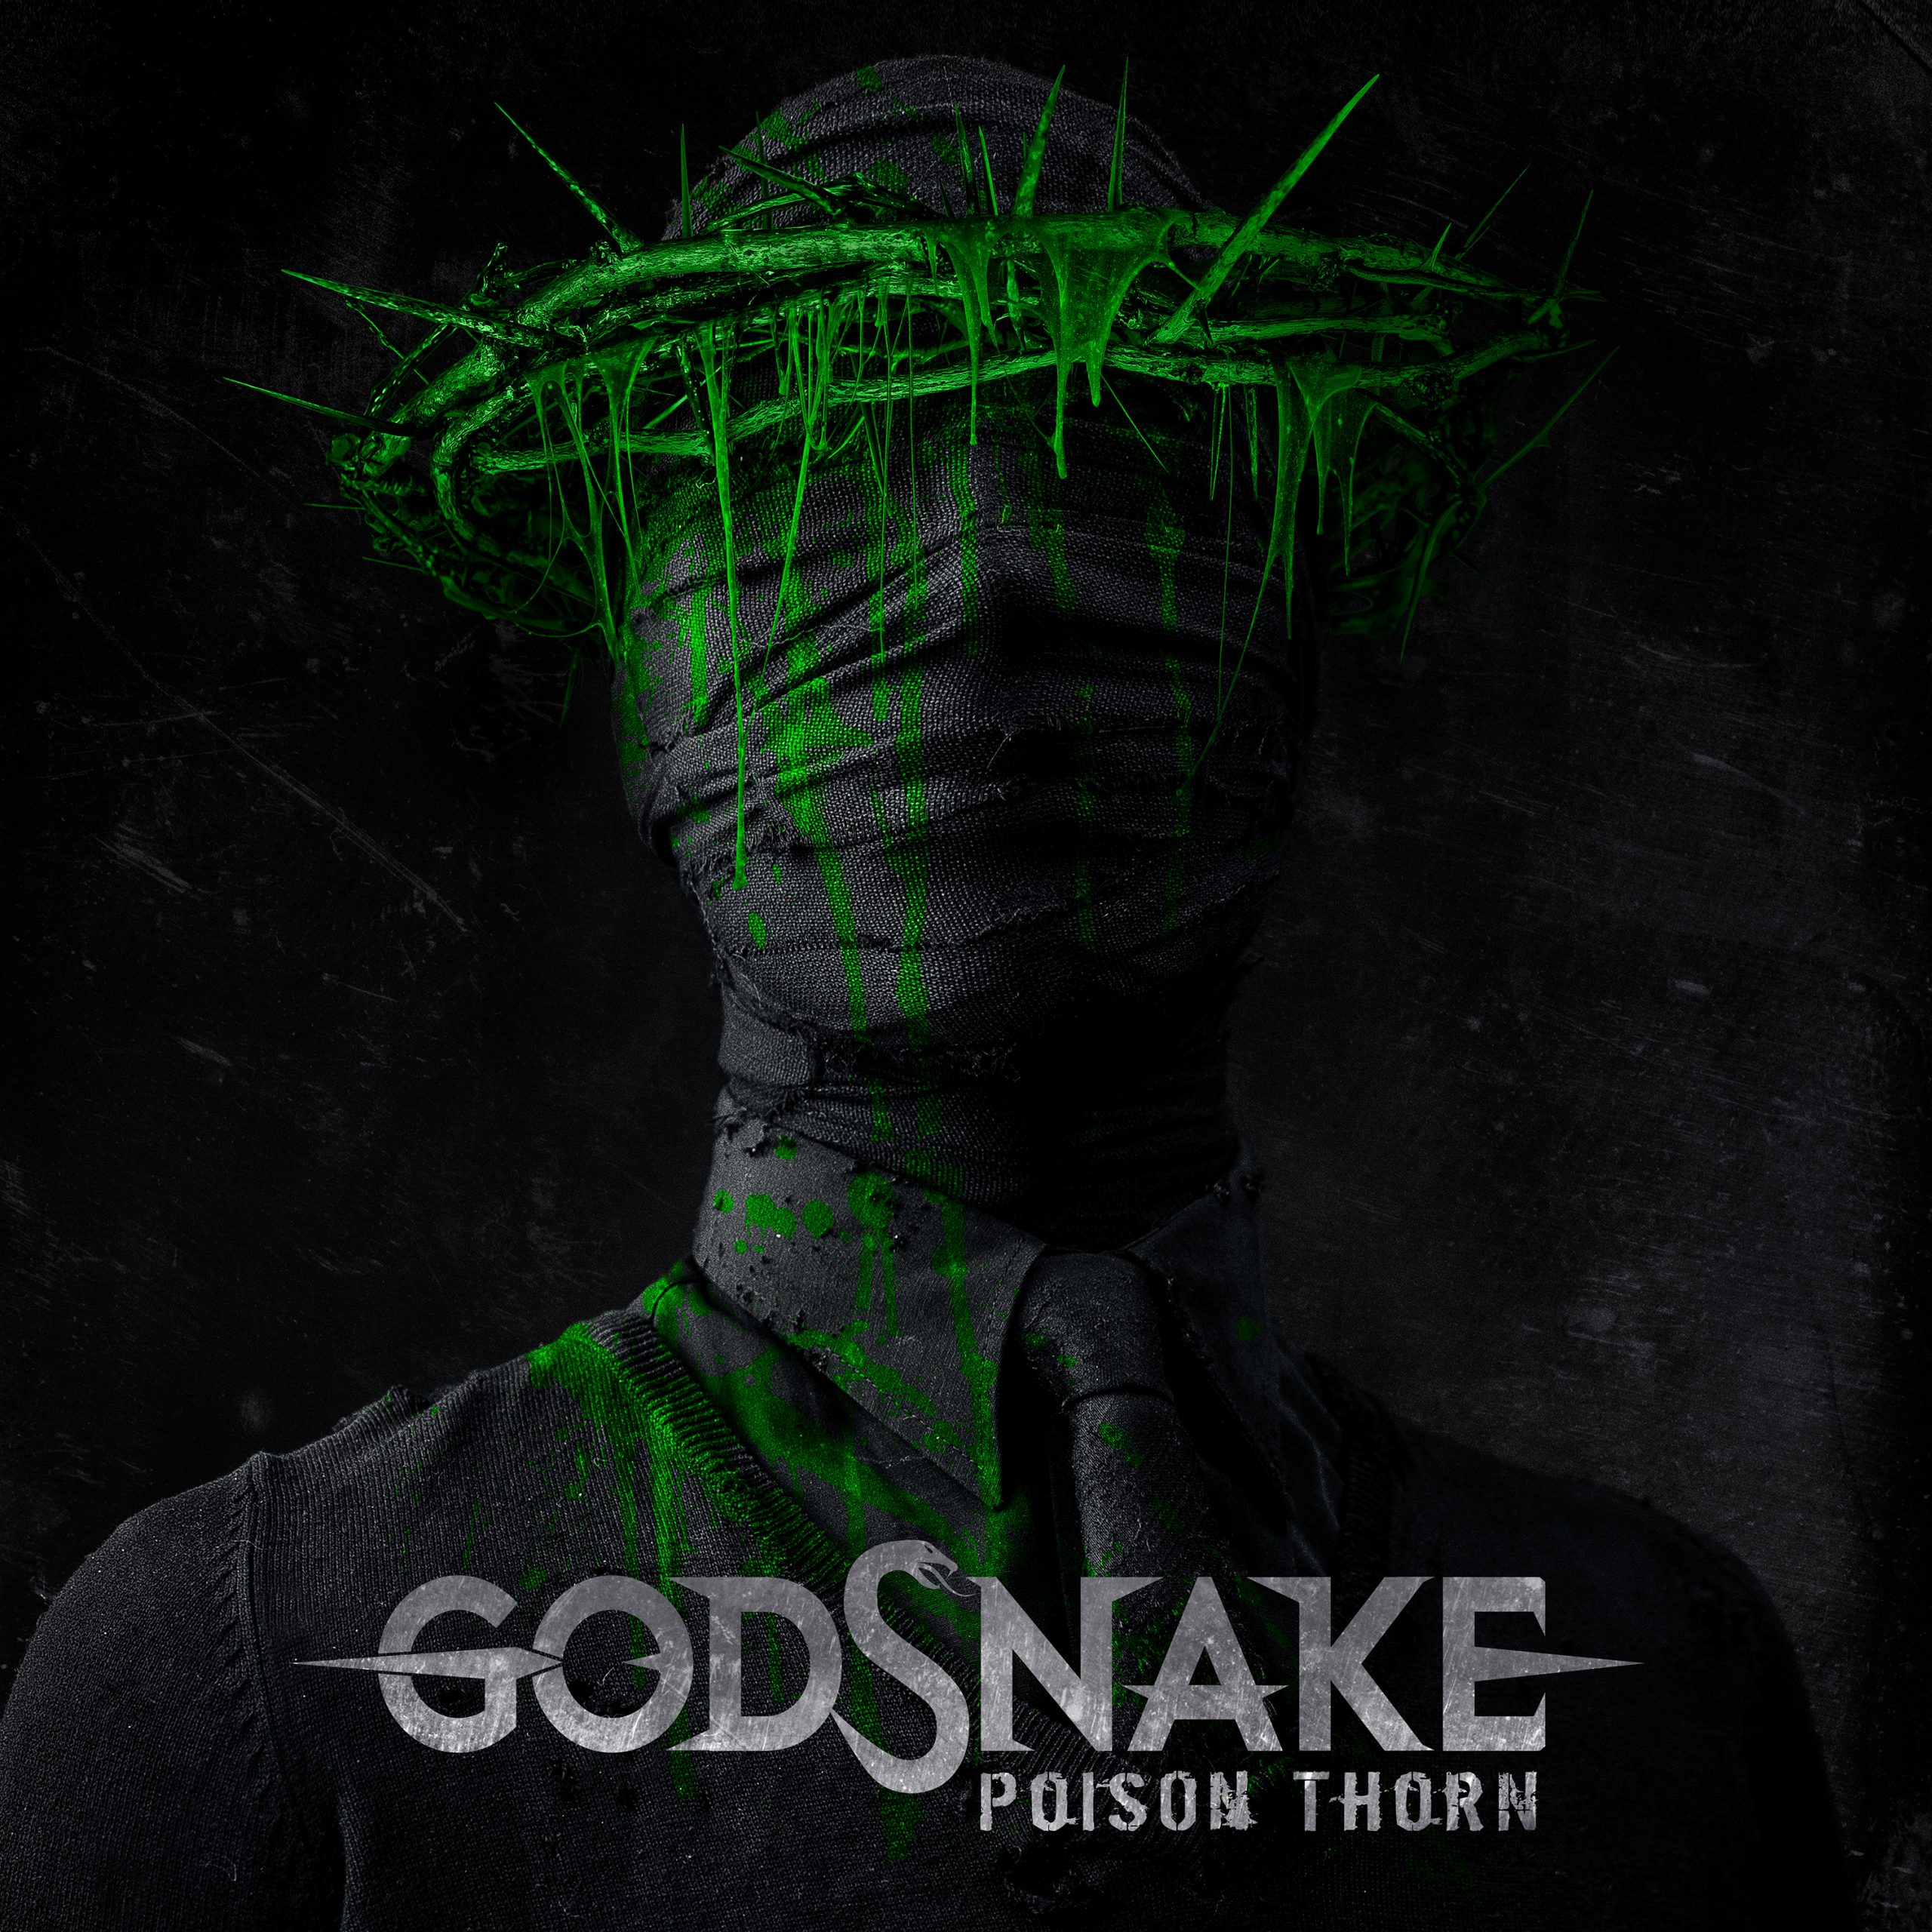 godsnake-poison-thorne-ein-album-review